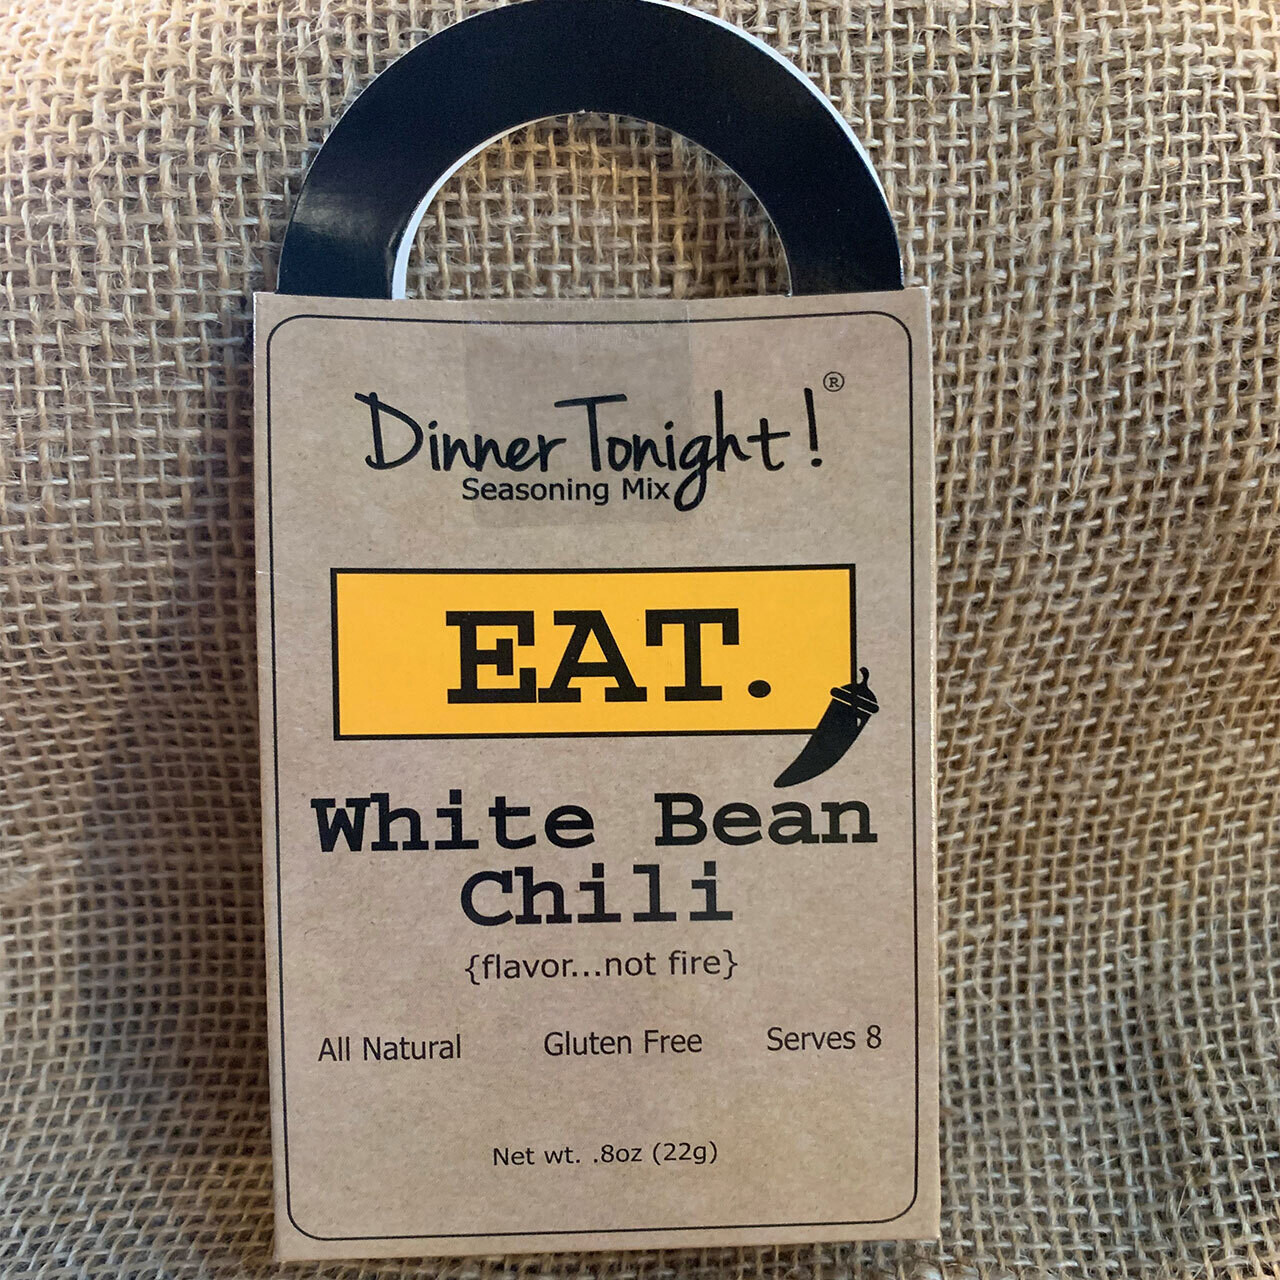 White Bean Chili Dinner Tonight